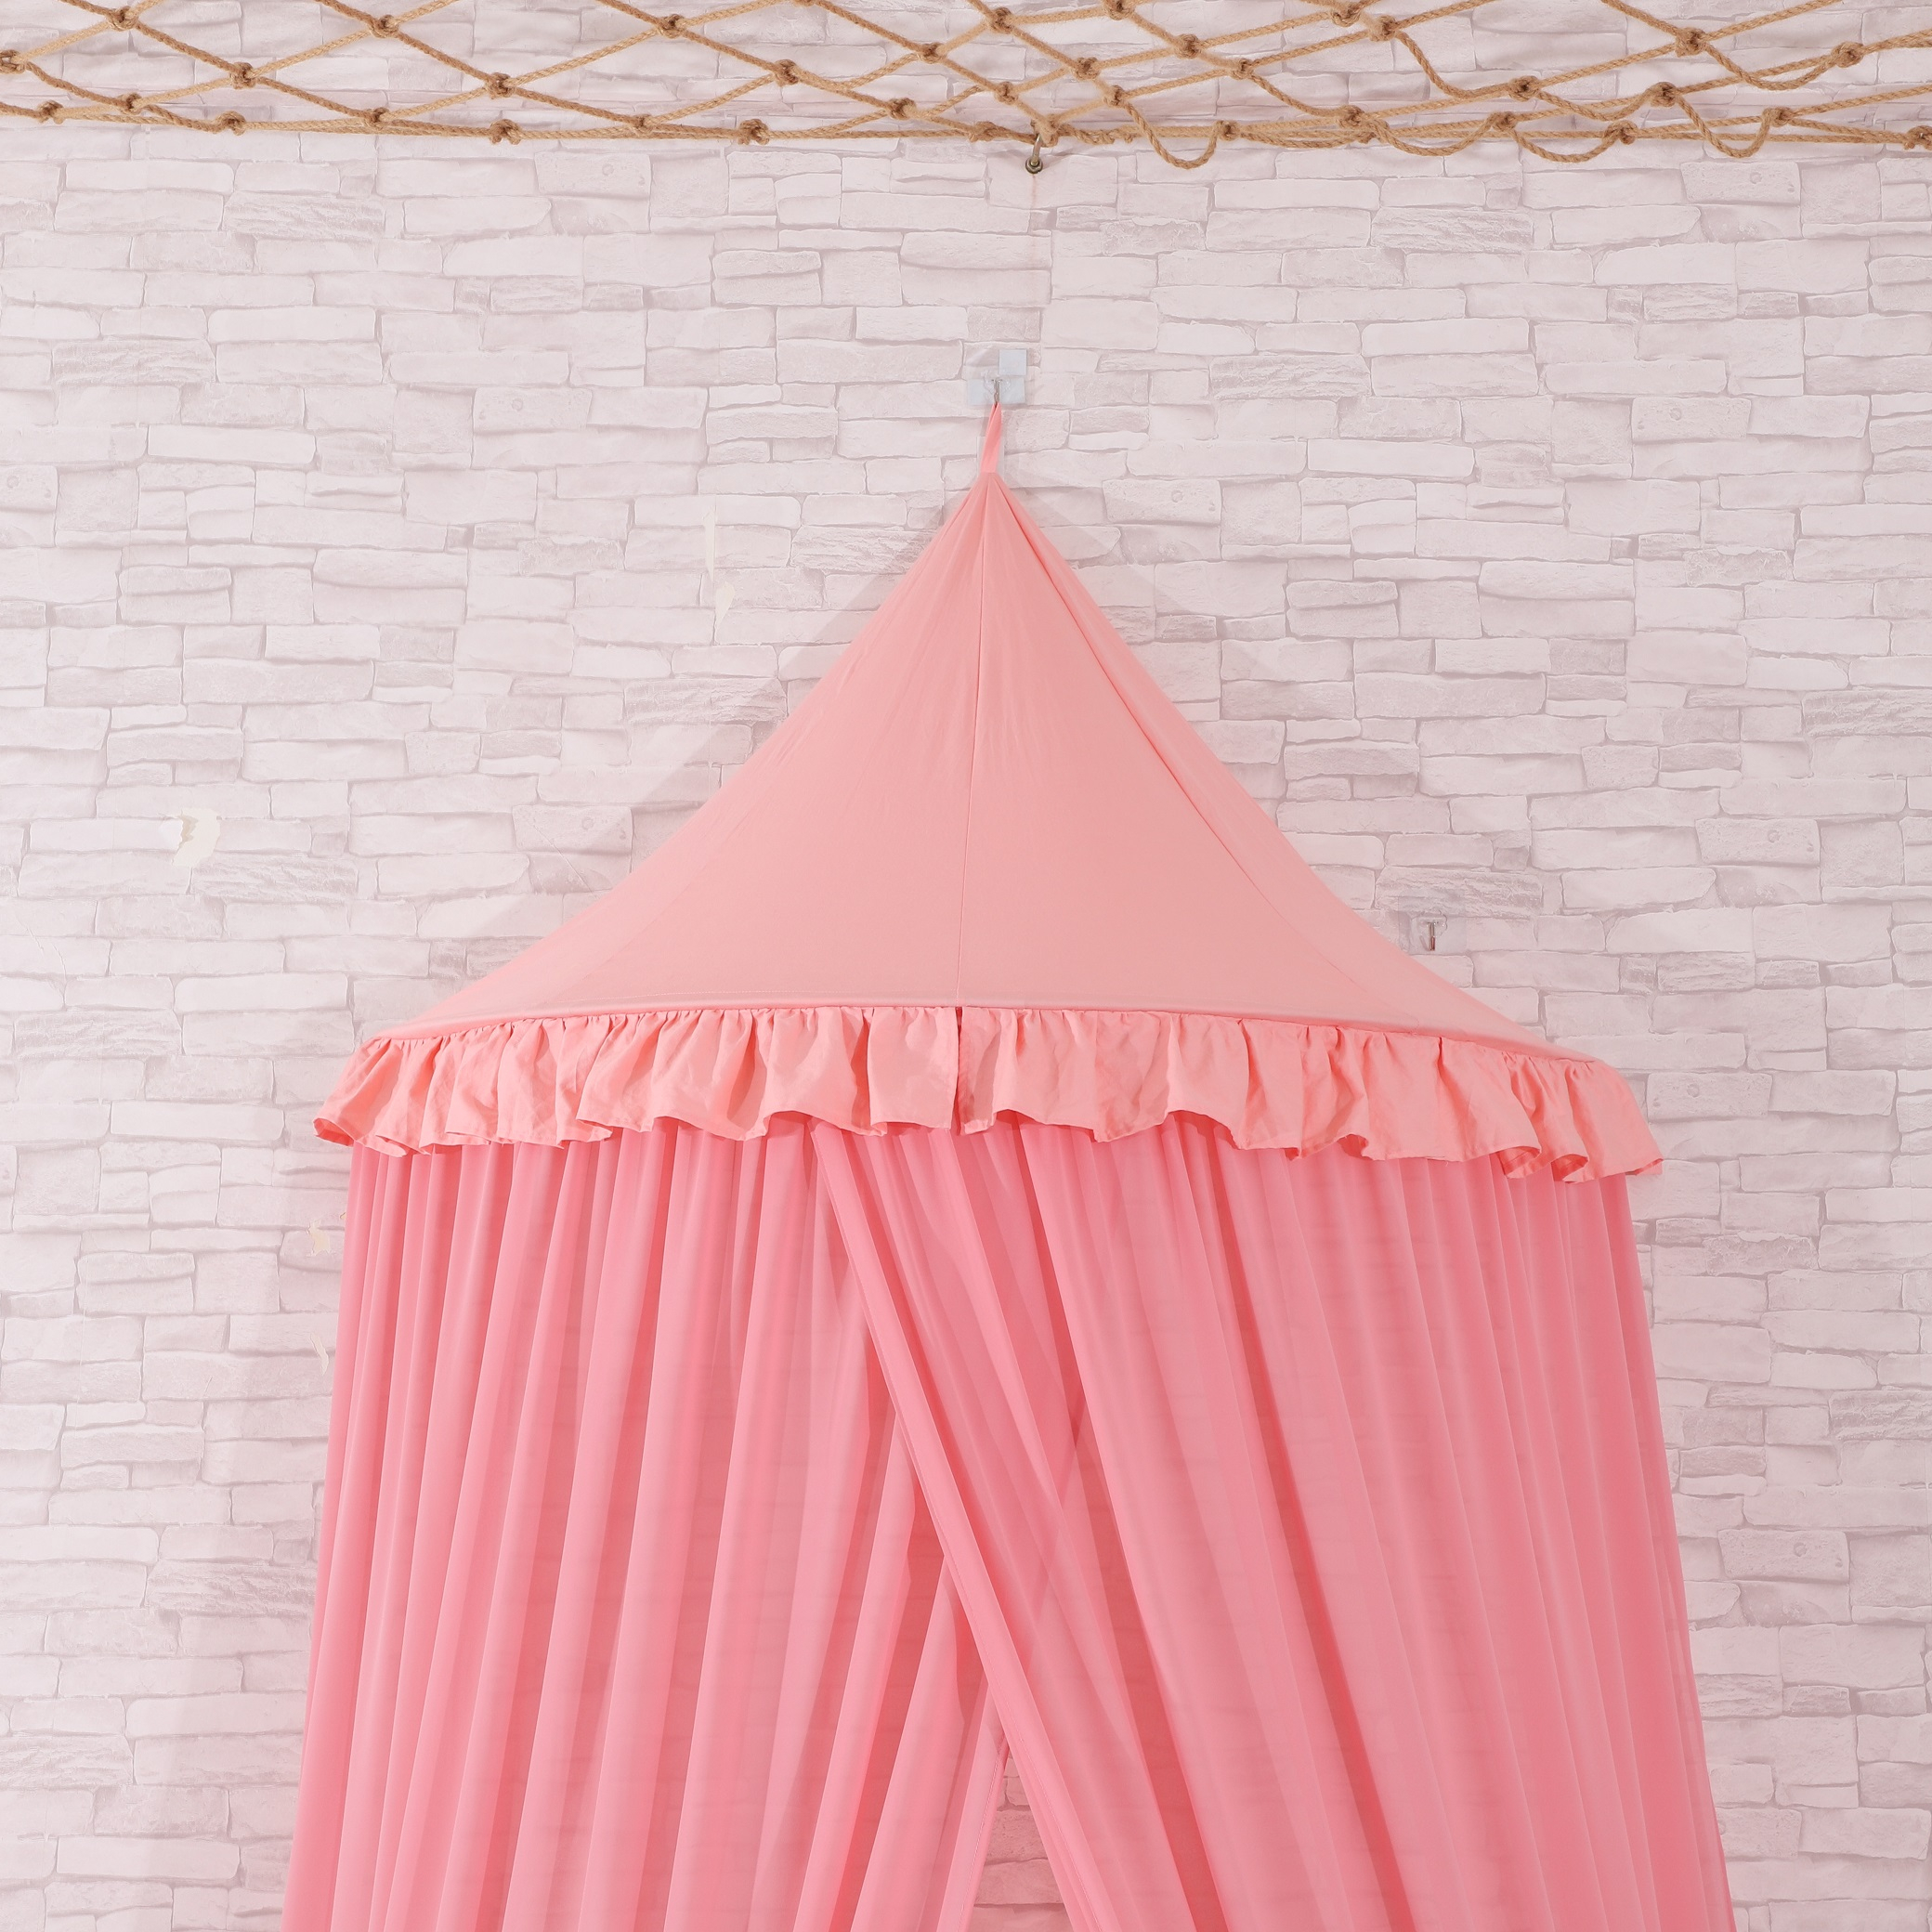 2020 Neues Produkt Pink 100% Polyester Gefaltetes Hängendes Moskitonetz